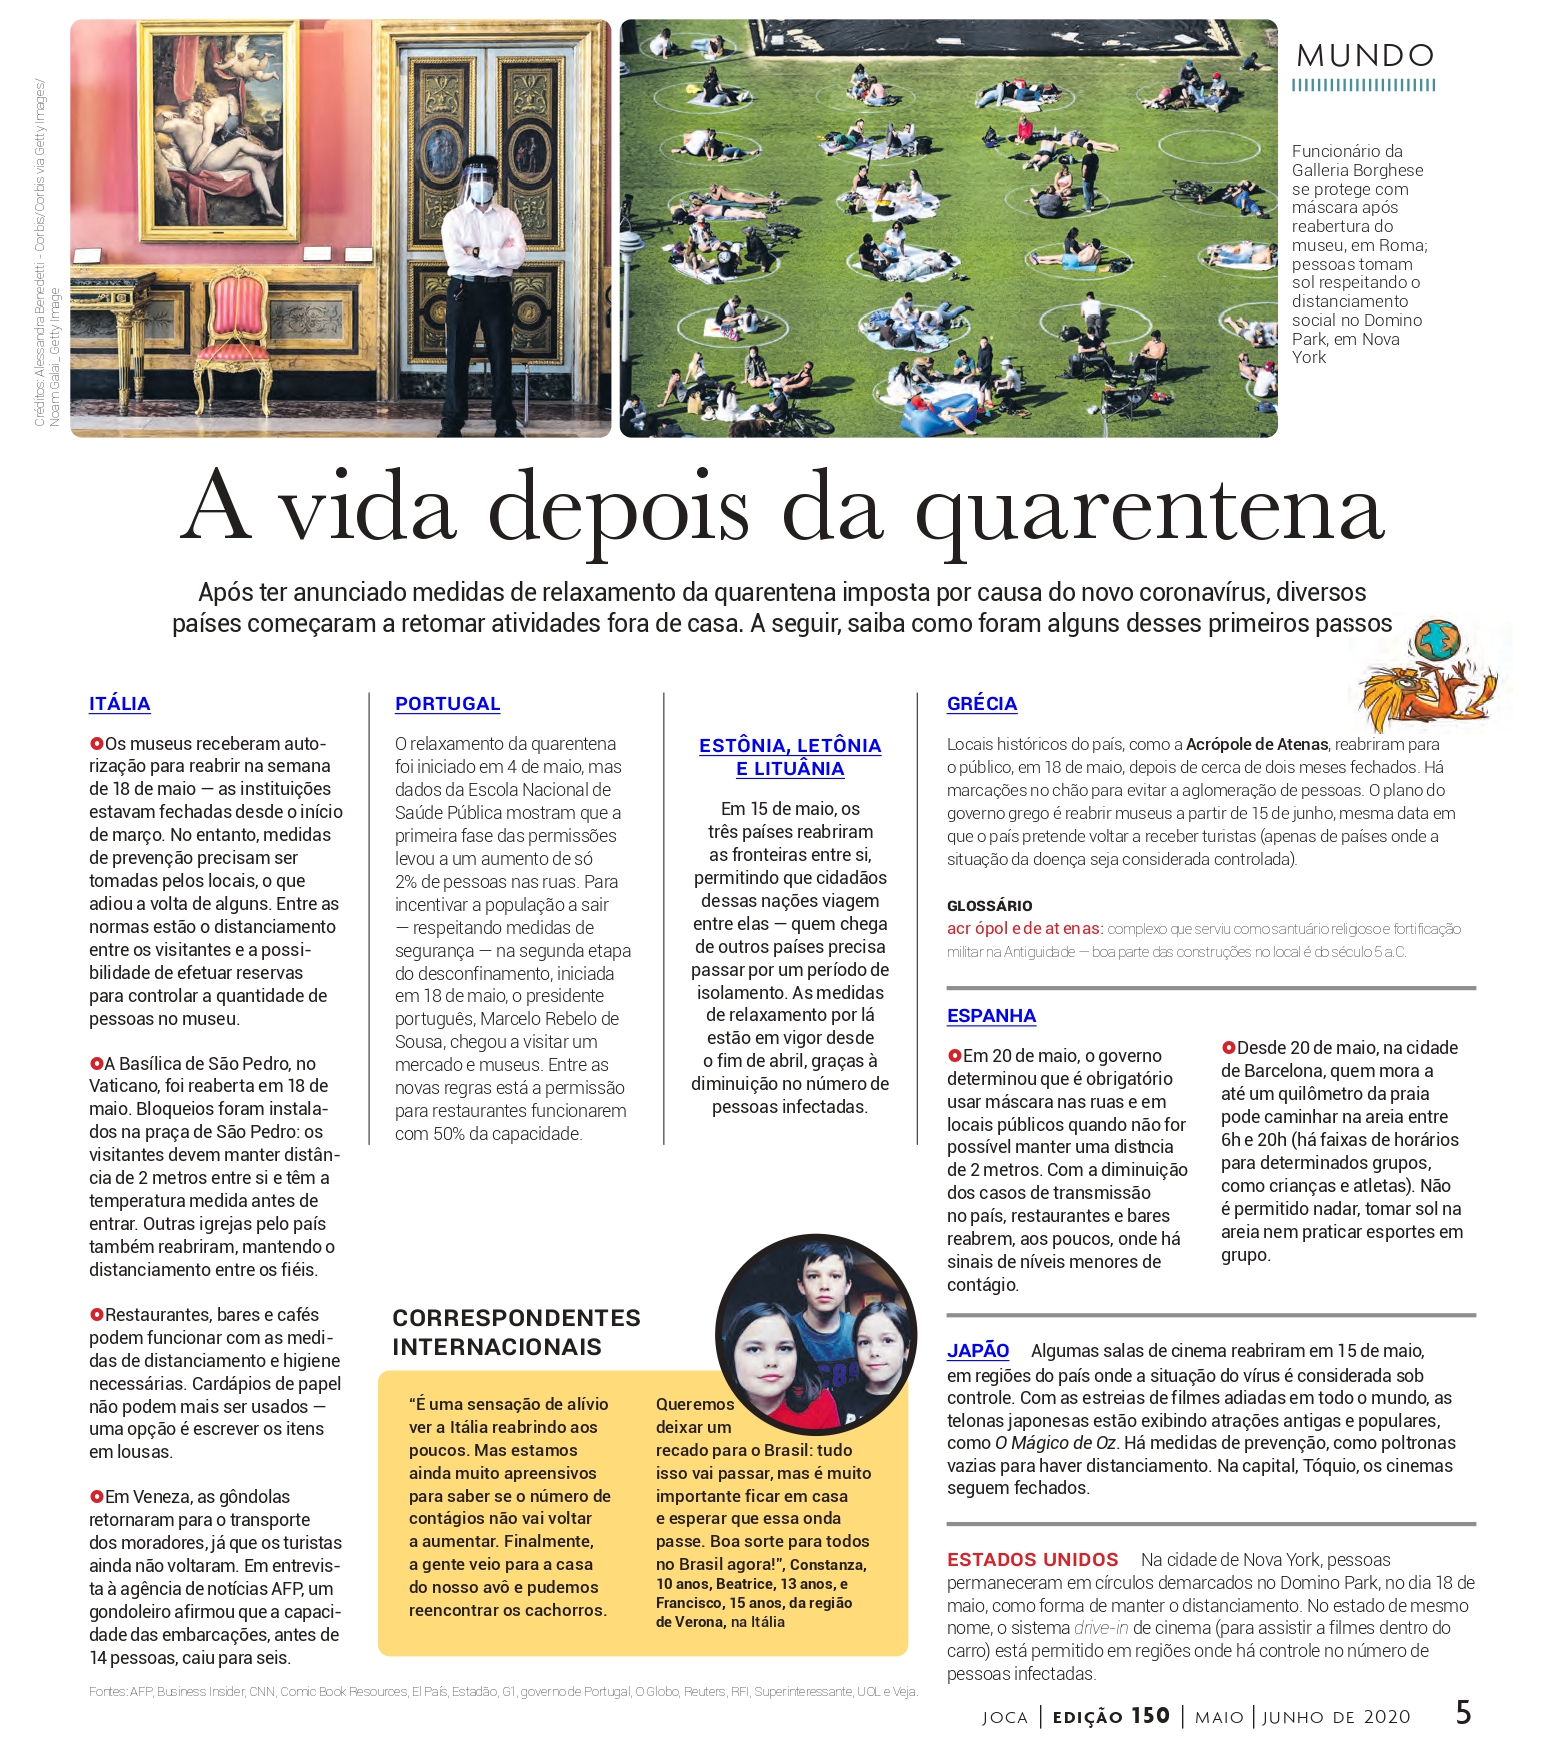 Jornal Joca - No Brasil, dia 20 de Novembro é o Dia